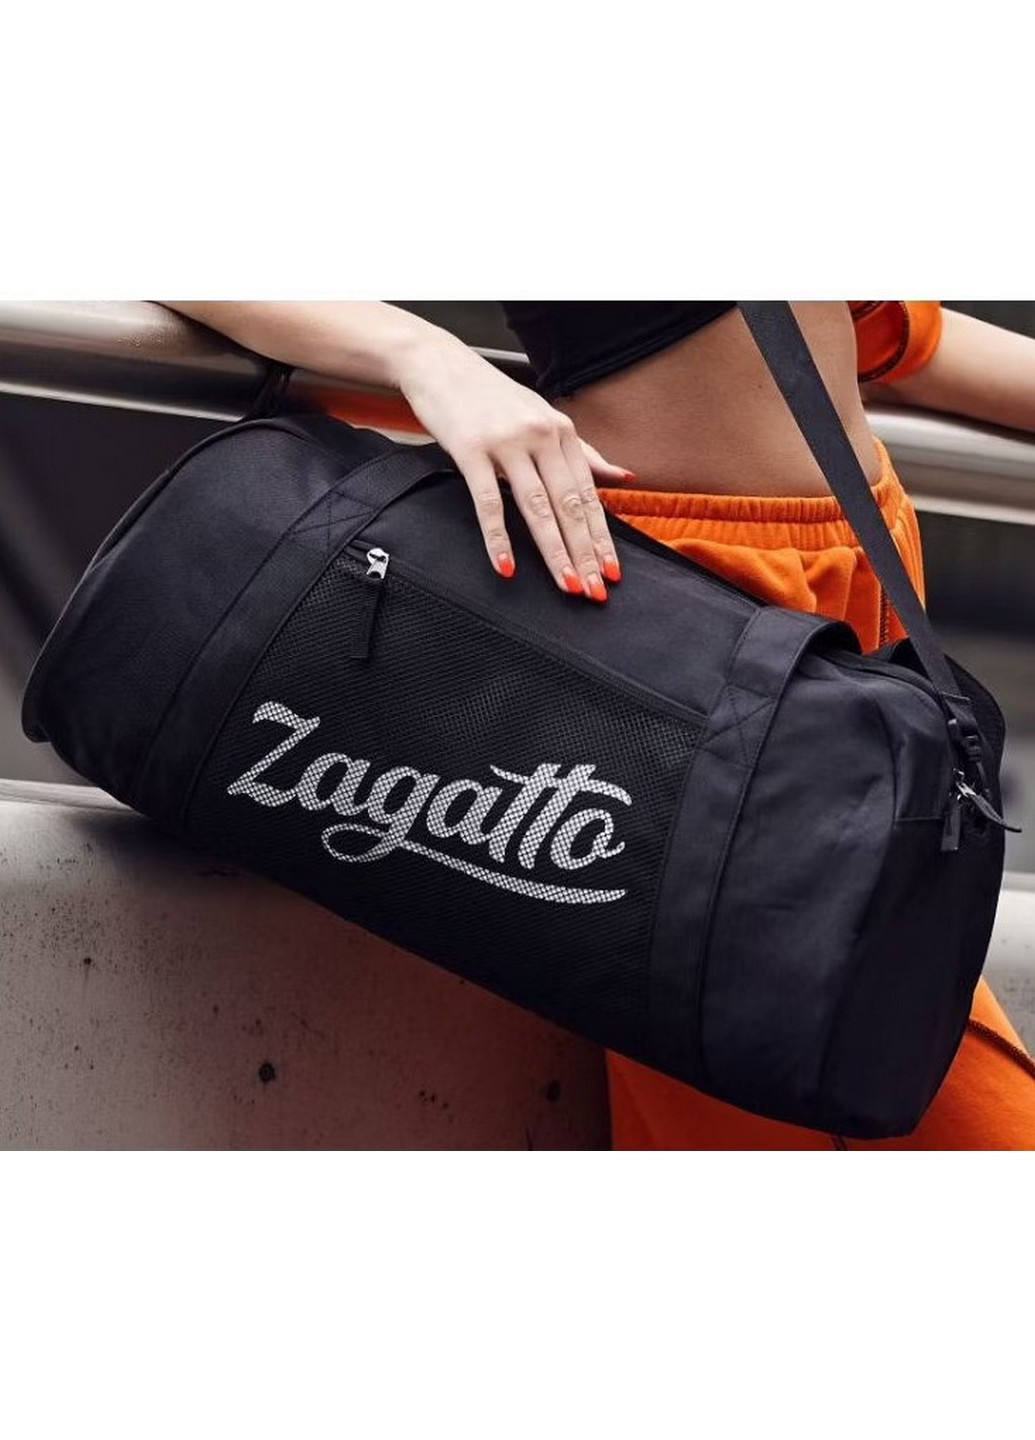 Спортивная сумка 37L 55x28x24 см Zagatto (258032251)